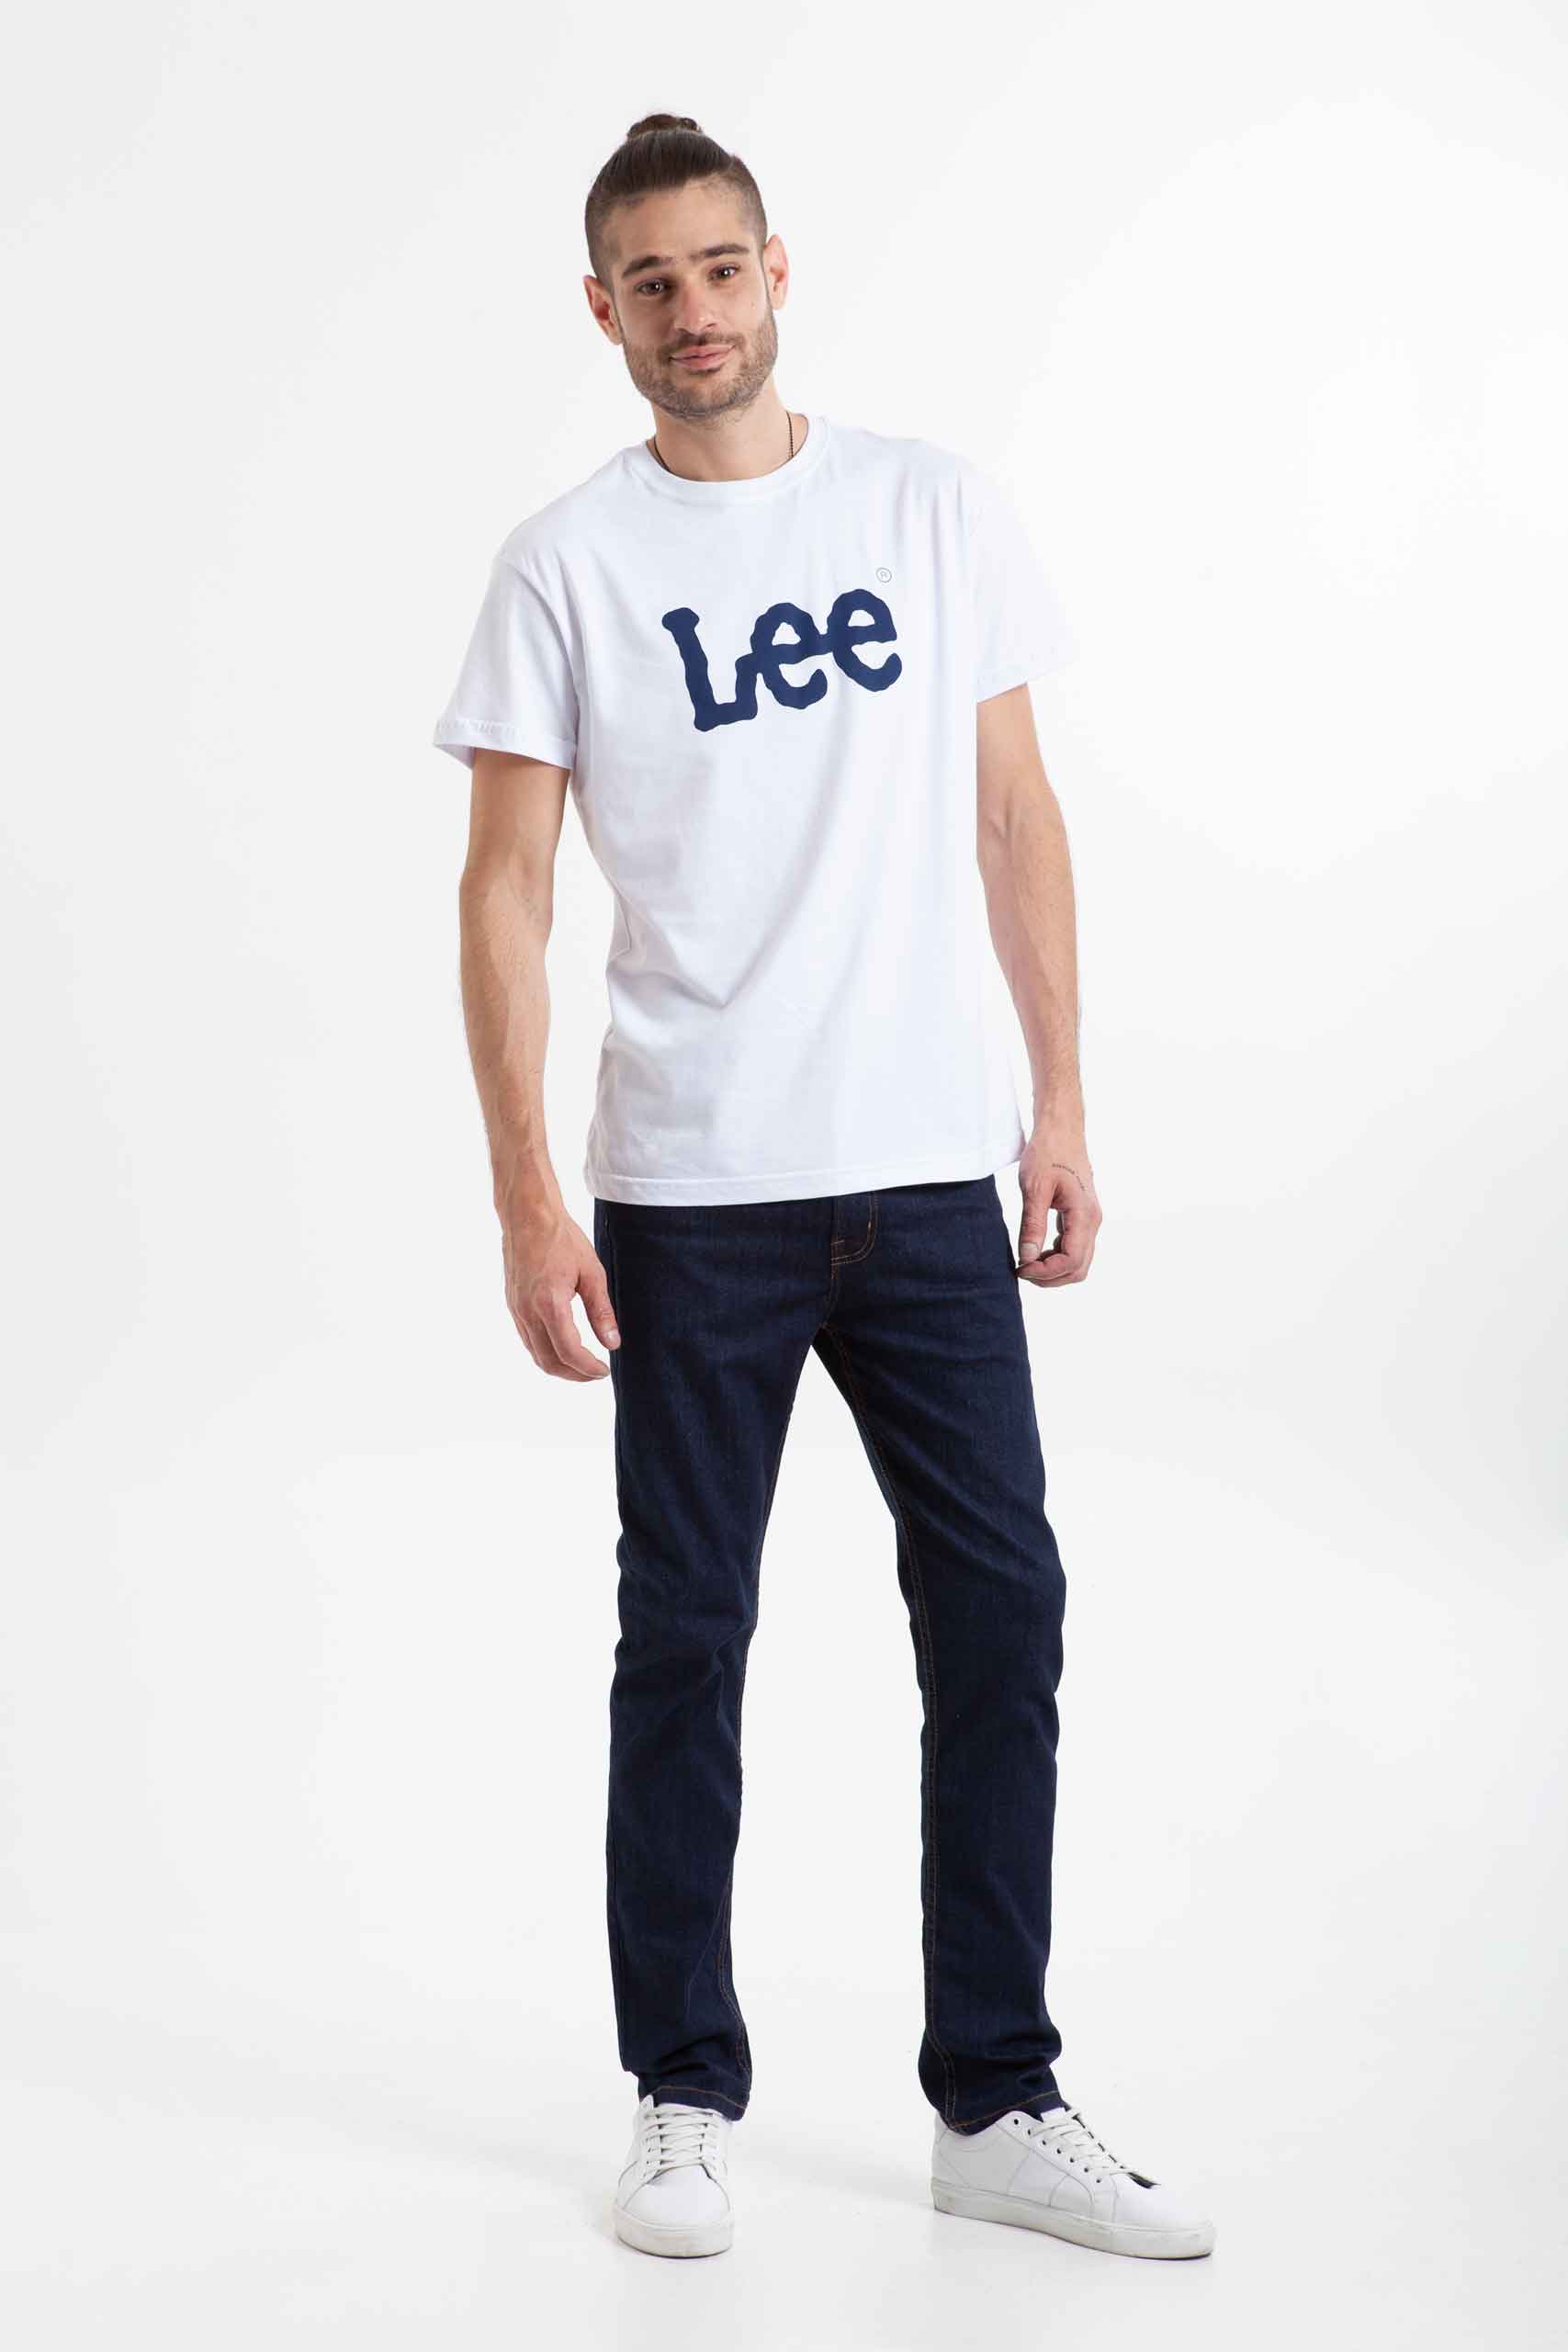 Vista frontal de camiseta color blanca con logo lee de color azul de marca lee